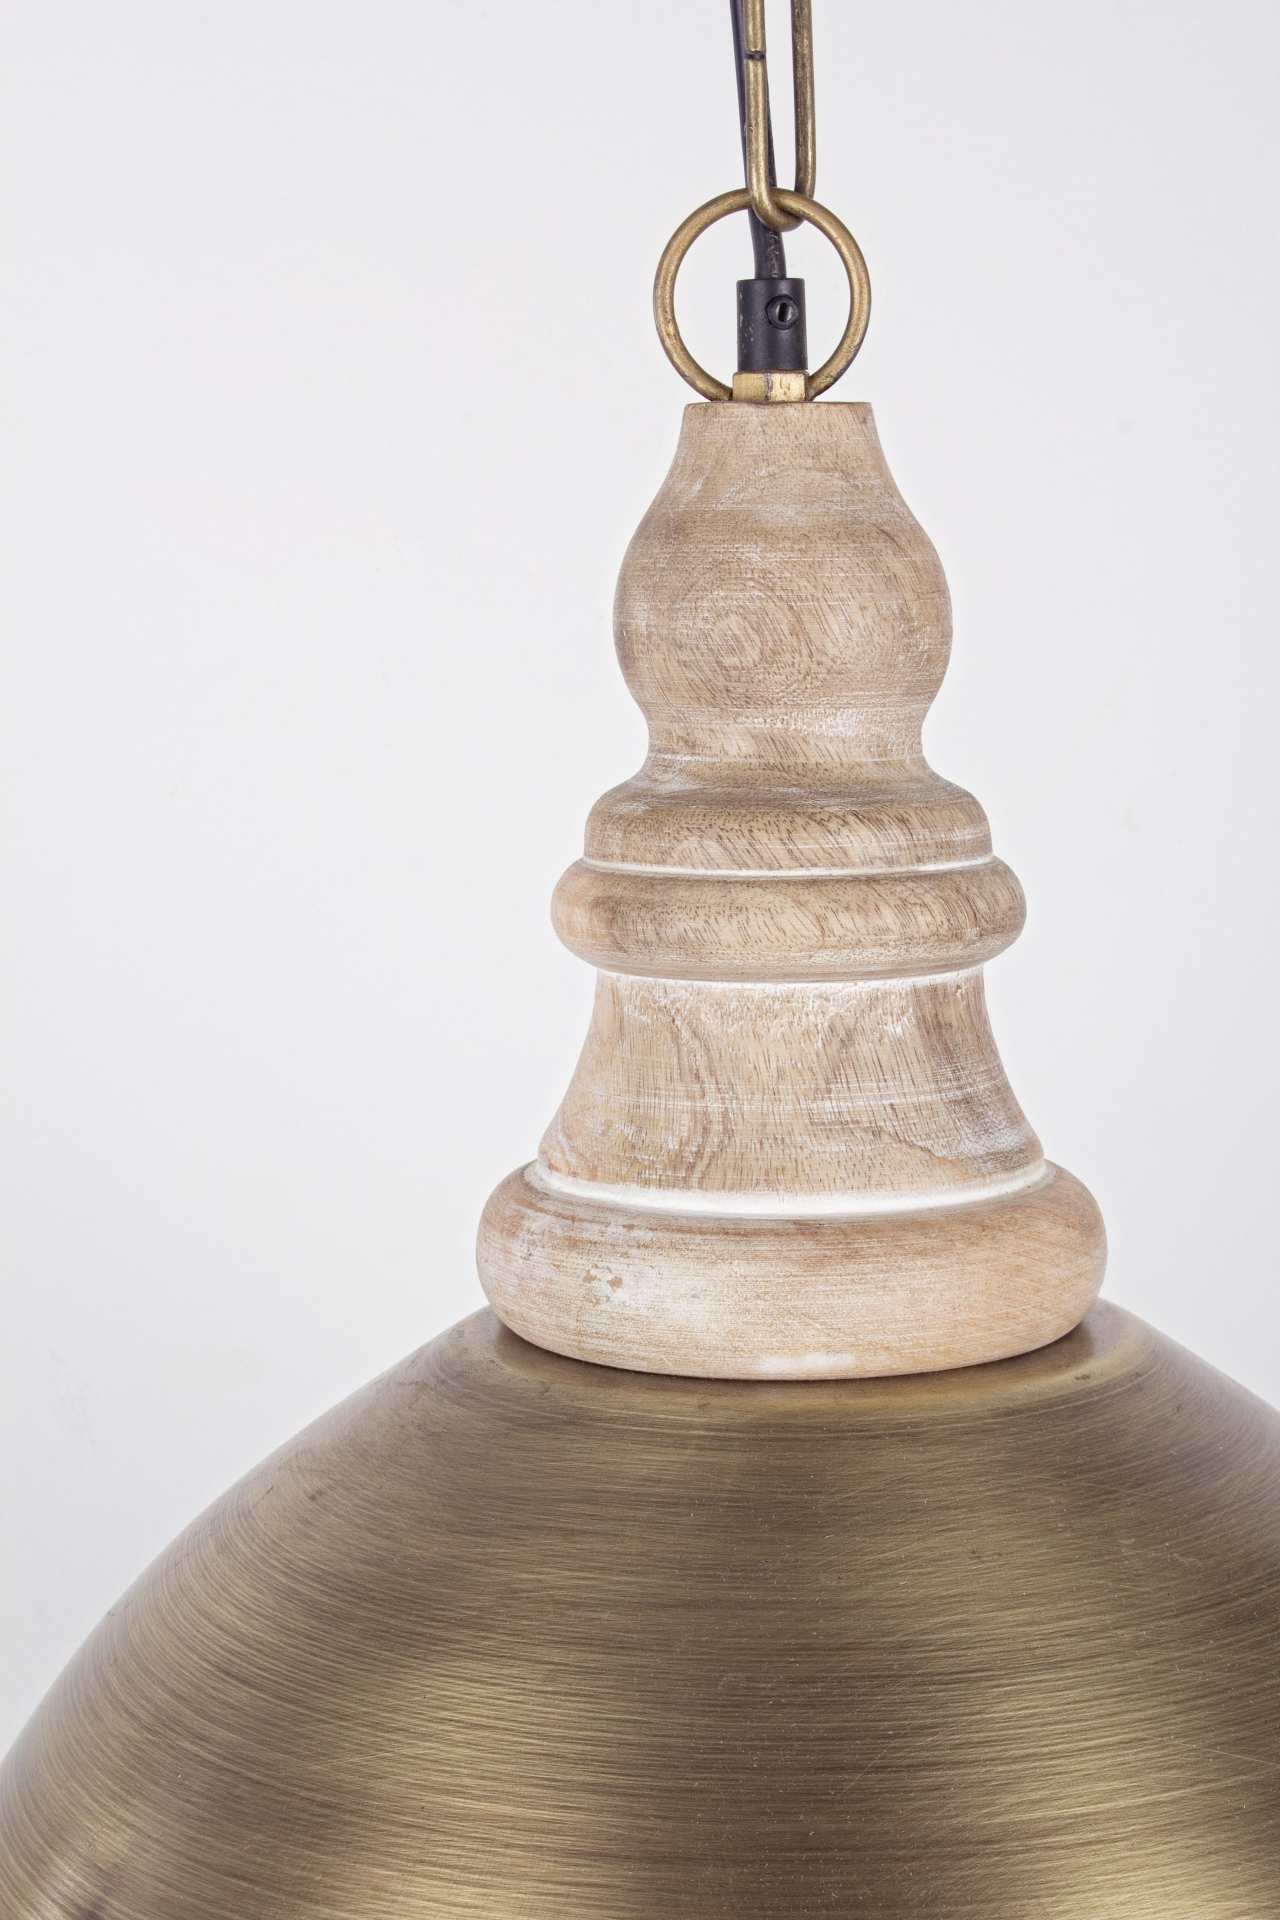 Die Hängeleuchte Zurine überzeugt mit ihrem klassischen Design. Gefertigt wurde sie aus Metall, welches einen goldene Farbton besitzt. Das Gestell ist auch aus Metall. Die Lampe besitzt eine Höhe von 45 cm.